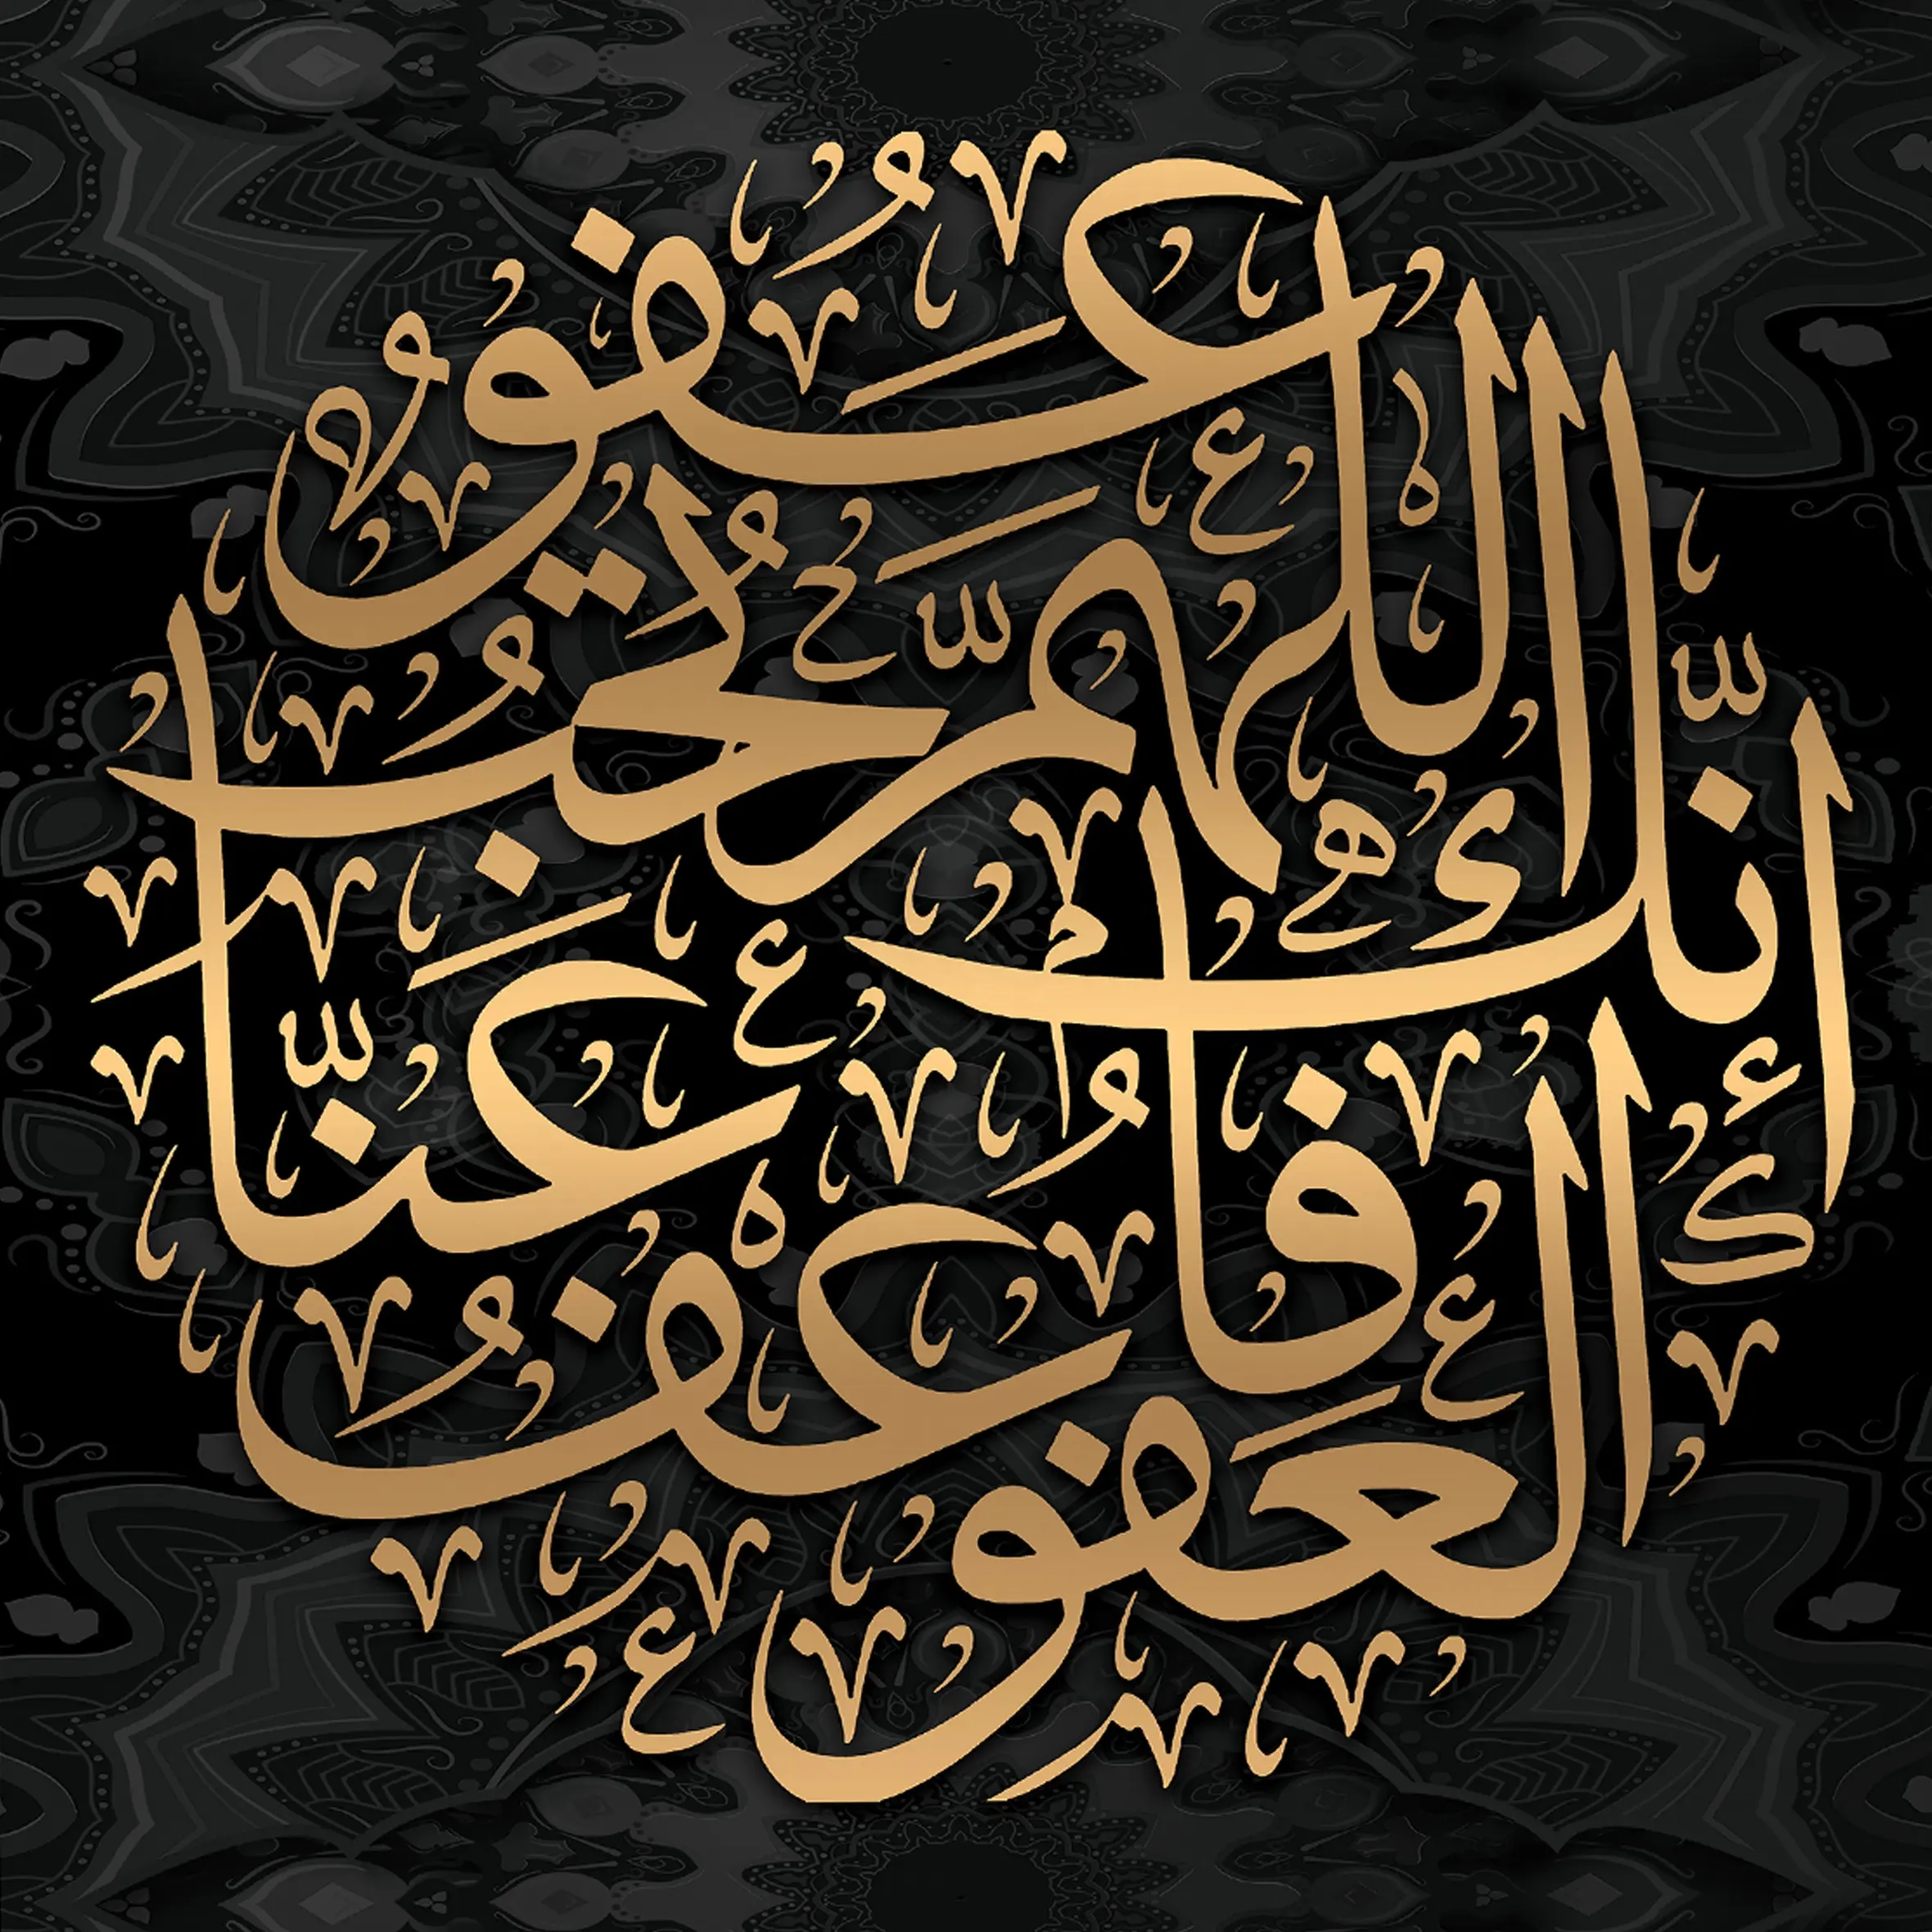 ダーリンコーラン書道写真キャンバス絵画磁器クリスタル絵画イスラム教徒のイスラム壁アート装飾家の装飾